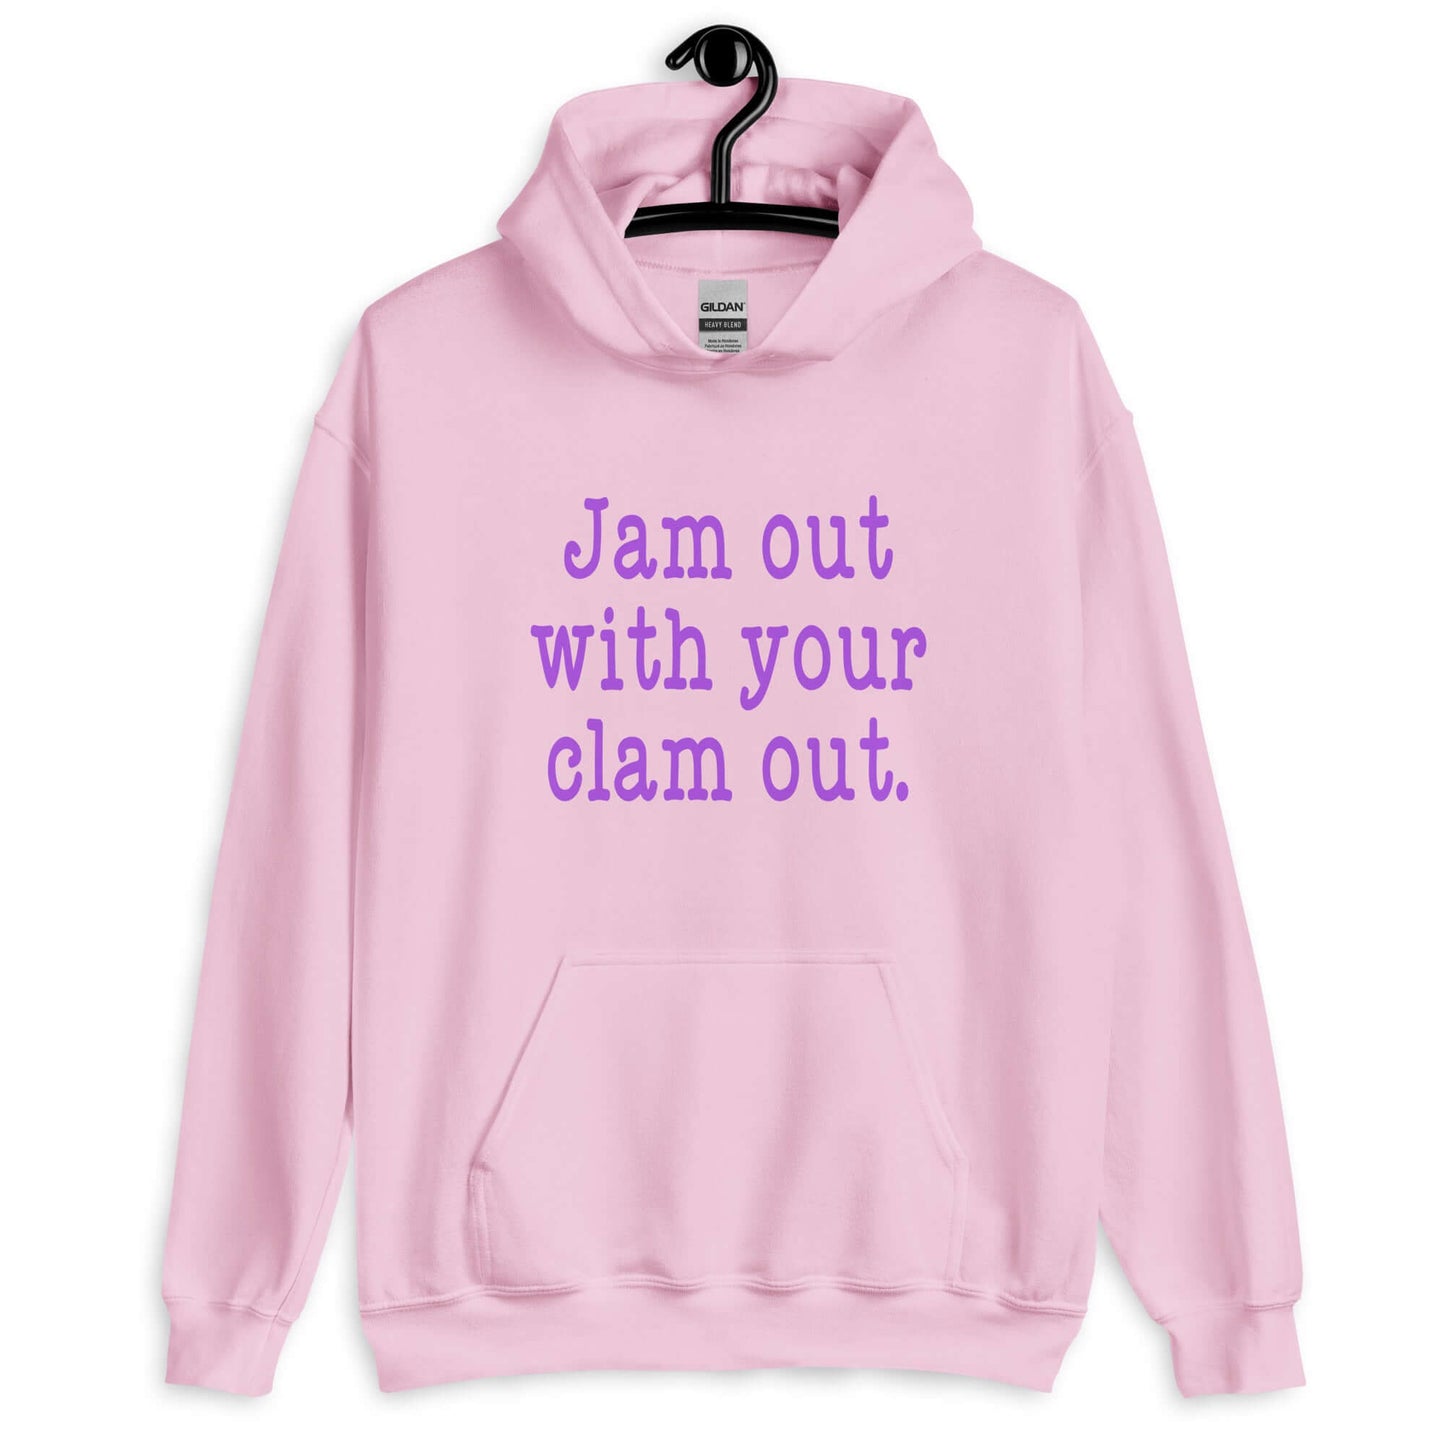 Jam out hoodie hooded sweatshirt